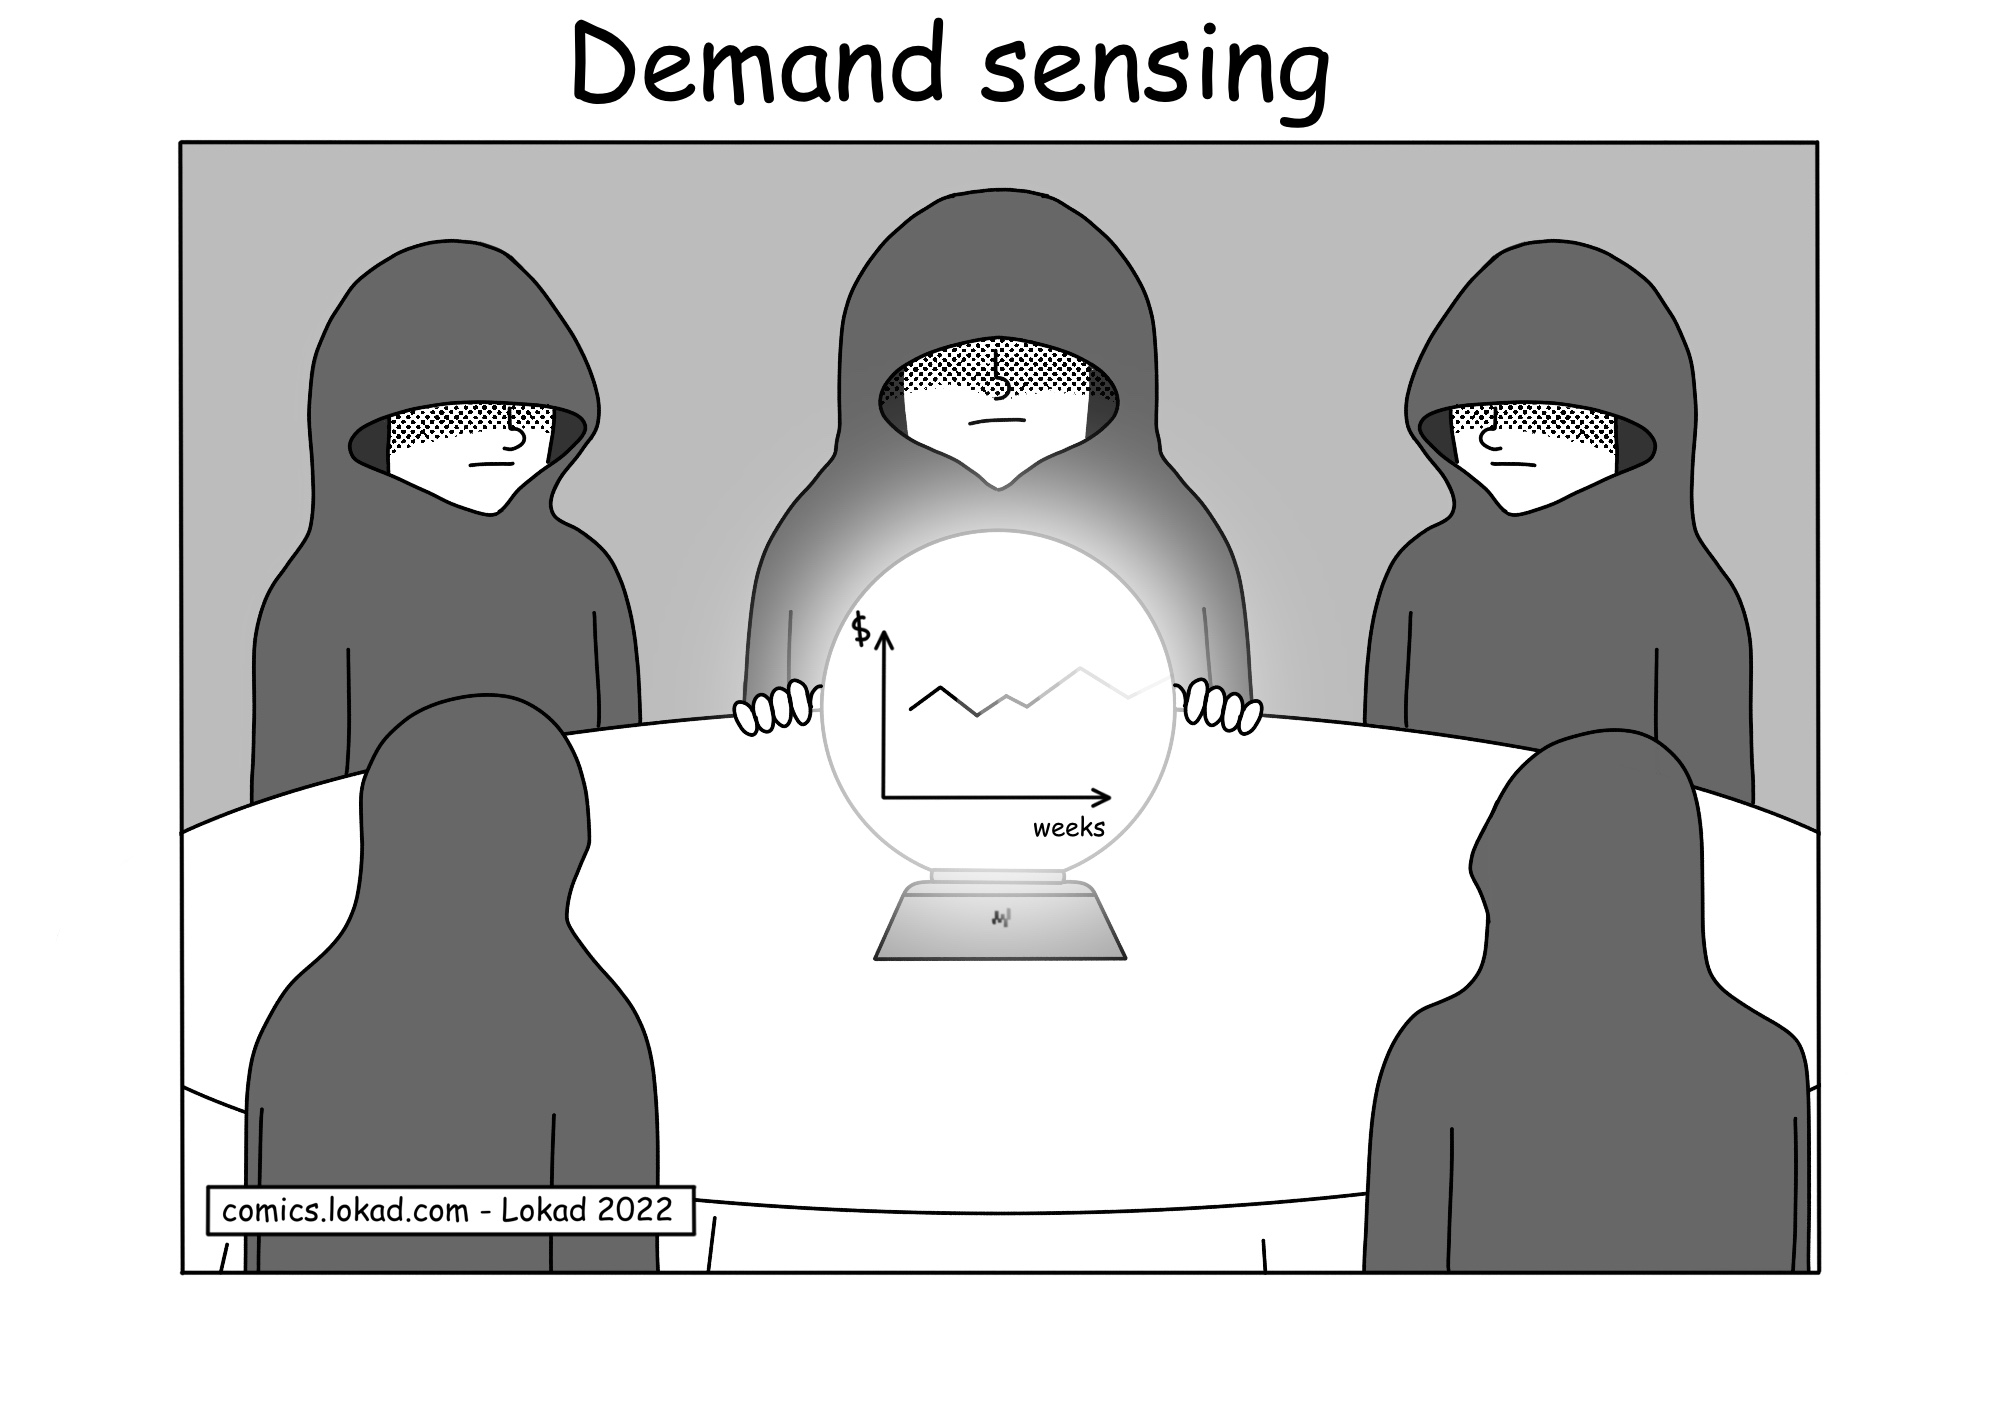 Demand sensing